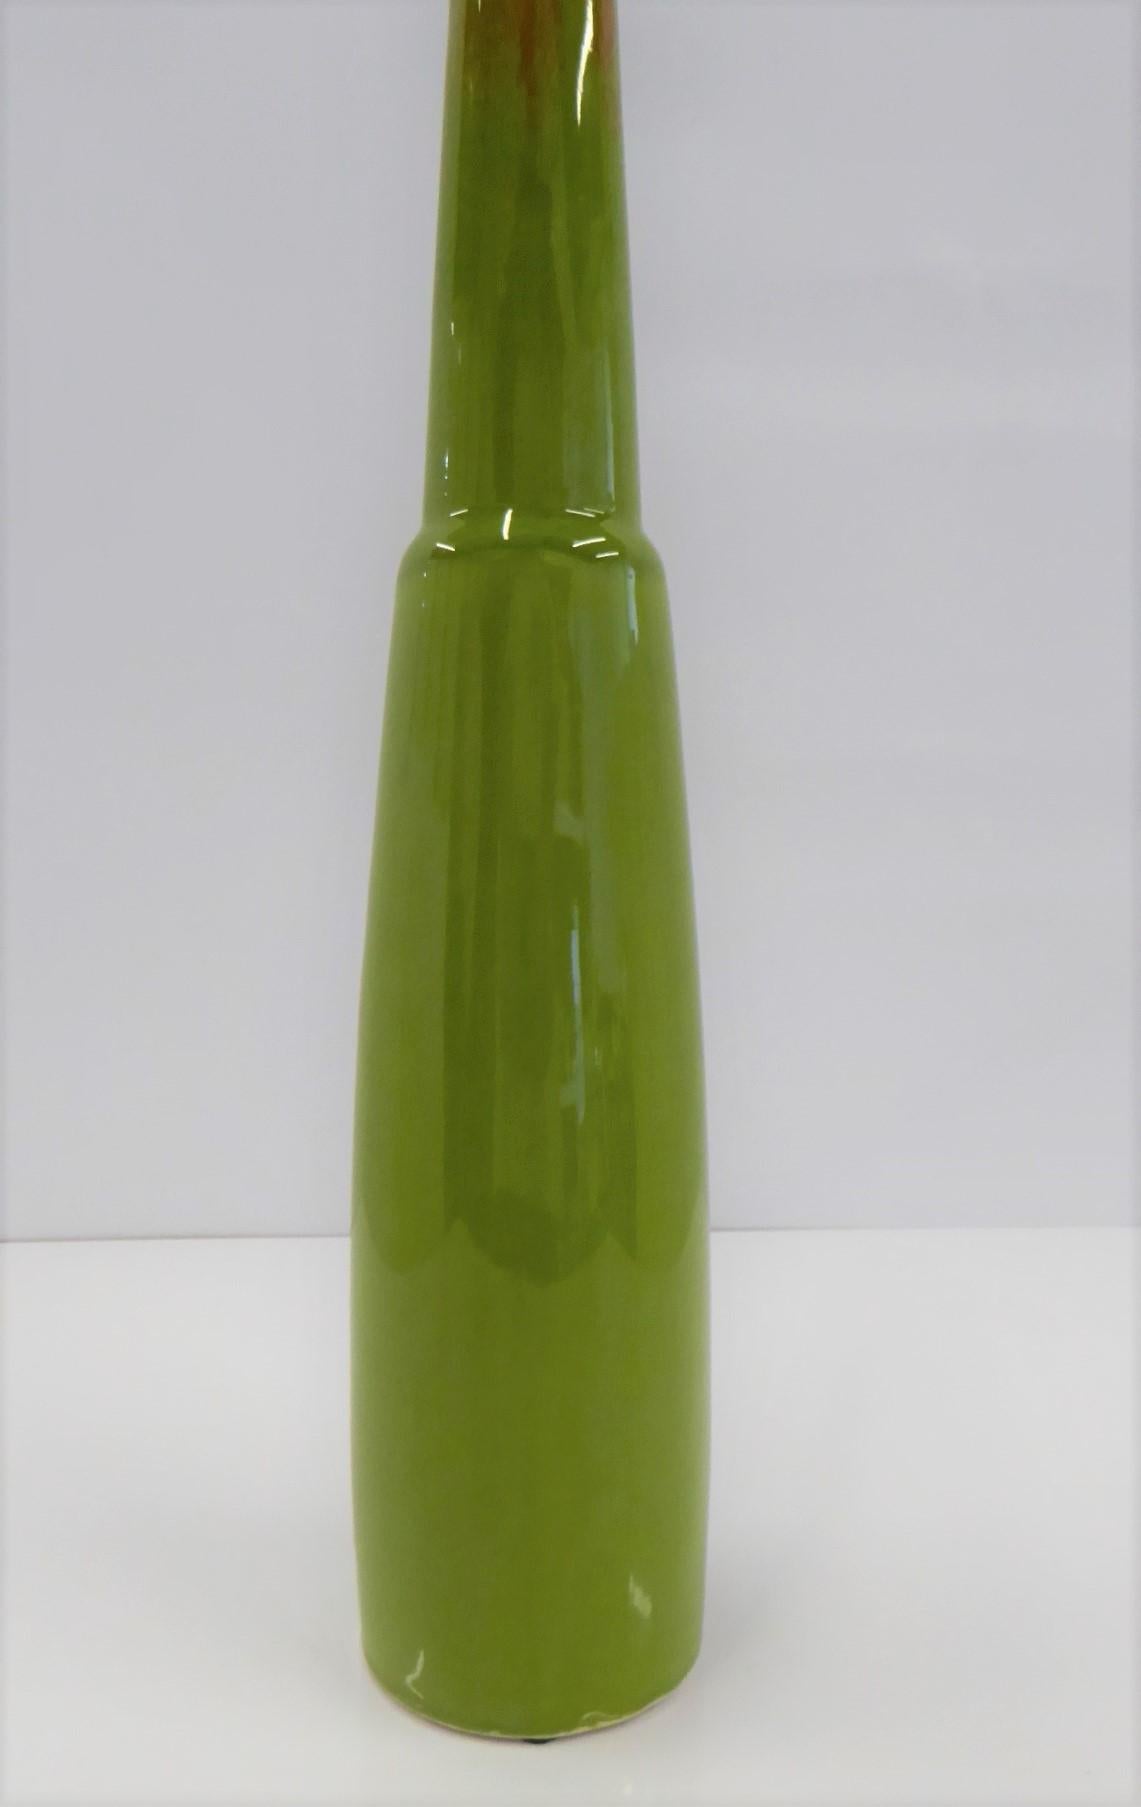 Glazed Modern Slender Ceramic Vase in Green and Orange Jaru of California, 1960s